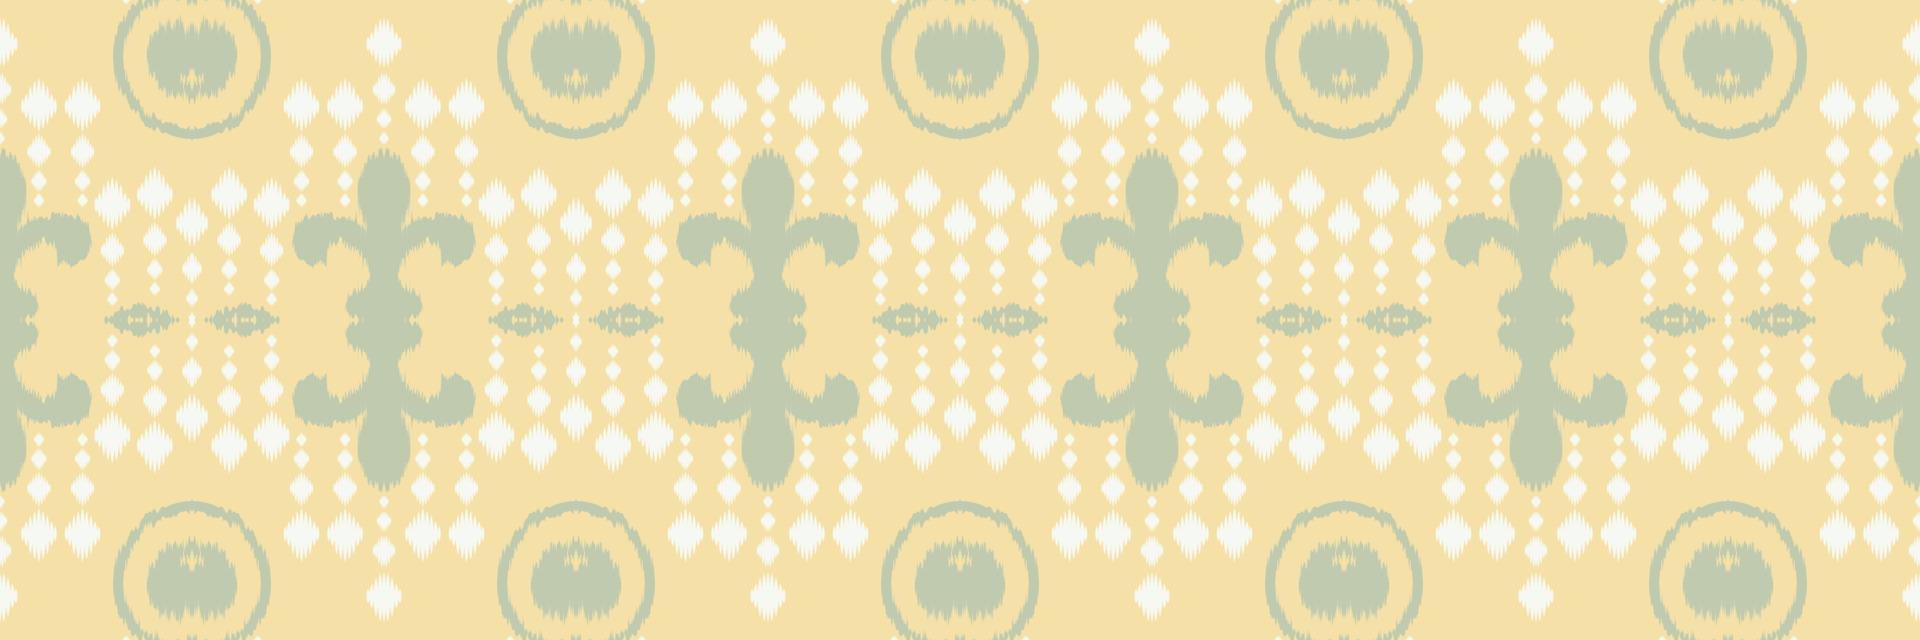 batik textil étnico ikat fondo de patrones sin fisuras diseño vectorial digital para imprimir saree kurti borneo borde de tela símbolos de pincel muestras con estilo vector